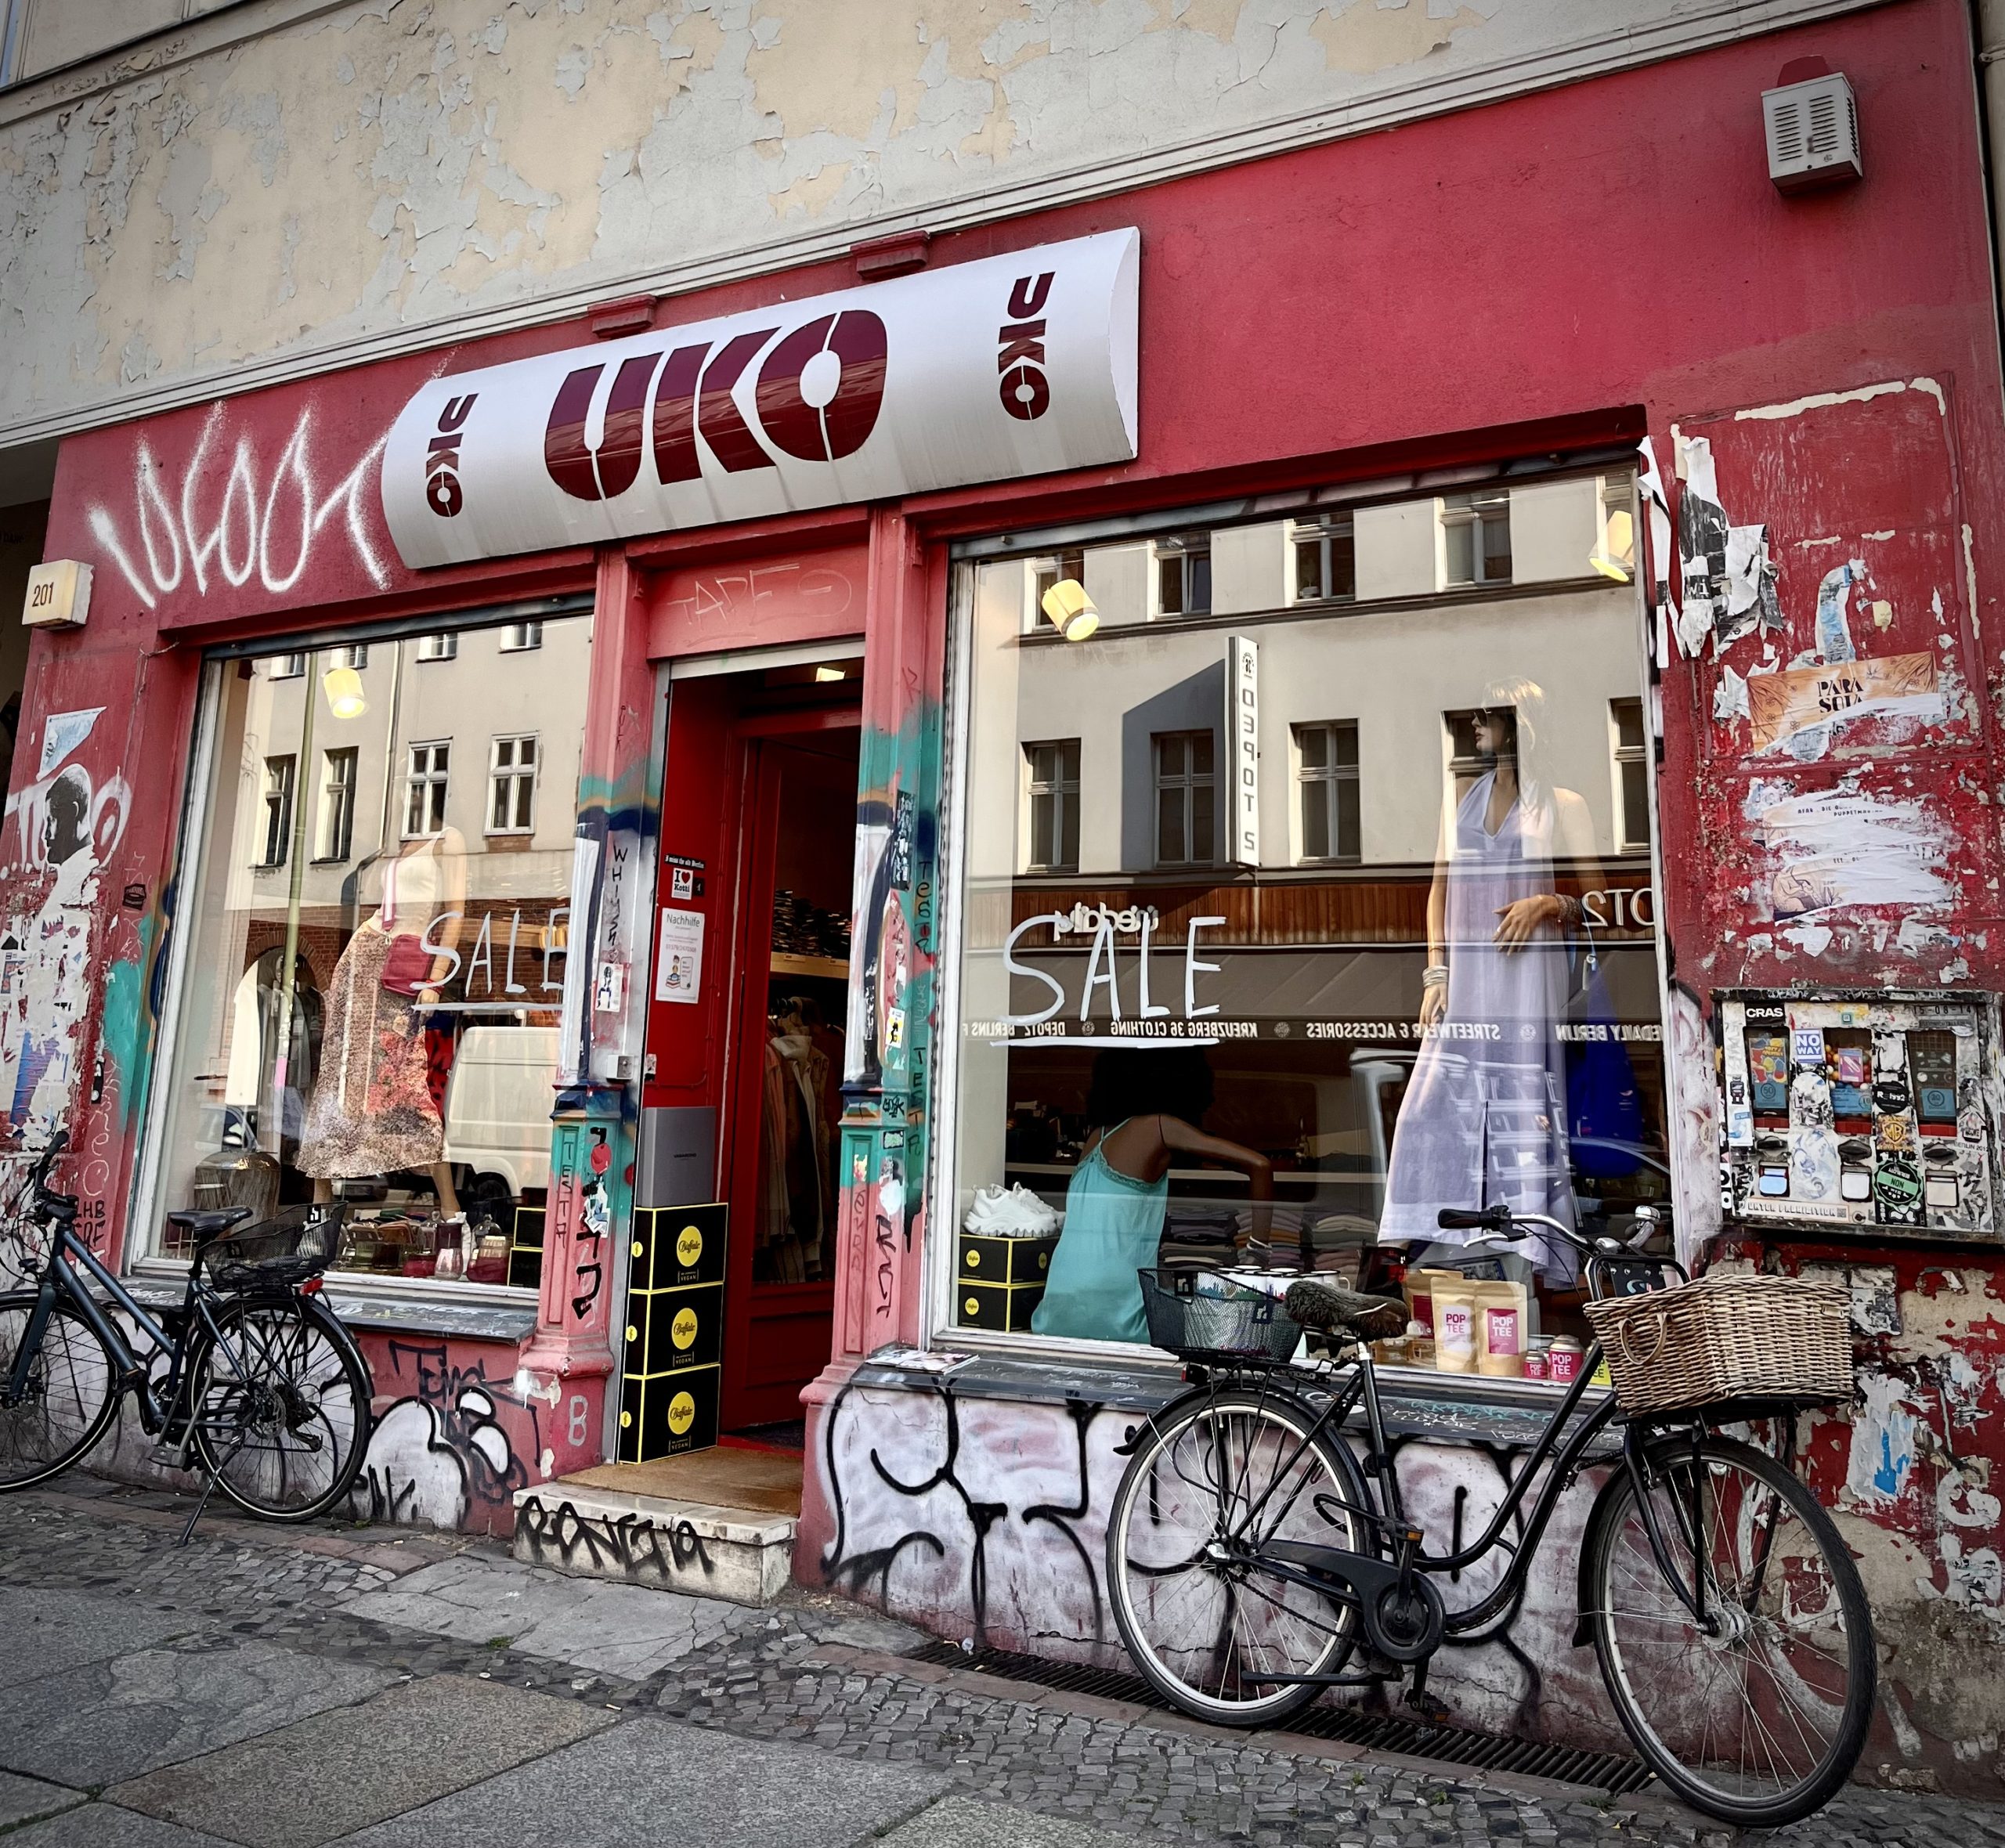 Vintage-Kleidung kaufen in Berlin Der Vintage-Kleiderladen Uko ist von außen unscheinbar – bietet aber ein breites, spannendes Sortiment.